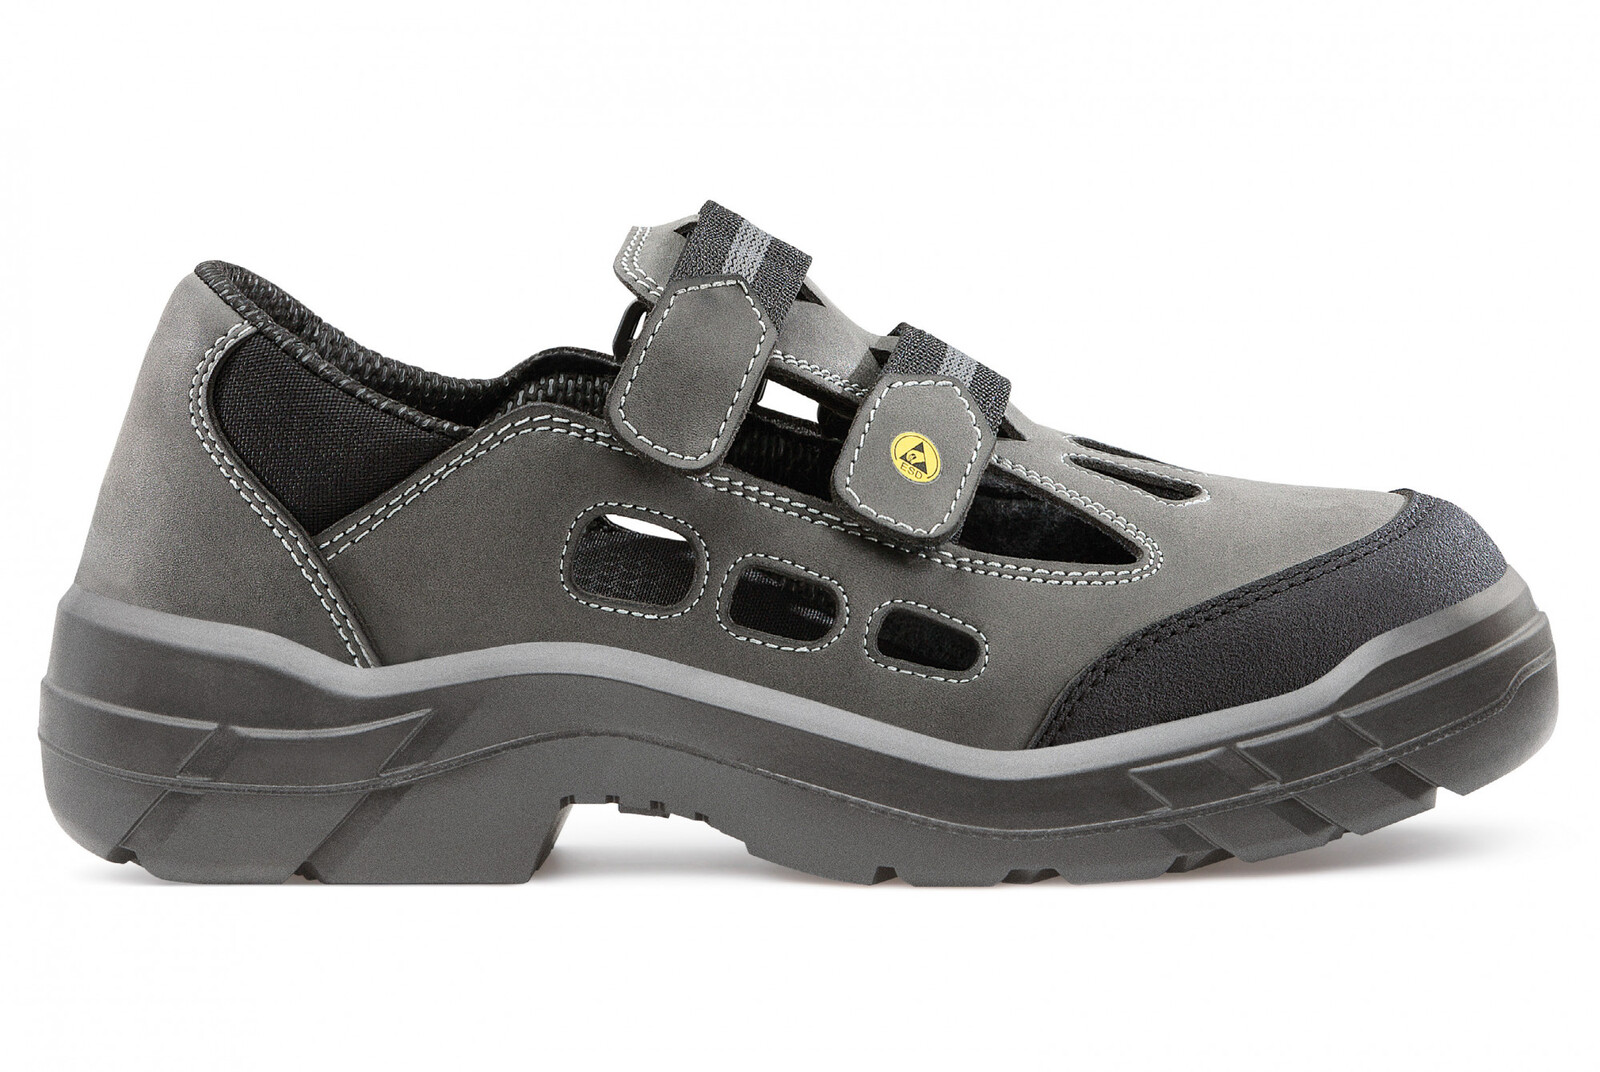 Bezpečnostné sandále  Artra Arjun 903 2560 S1 SRC ESD - veľkosť: 47, farba: sivá/čierna